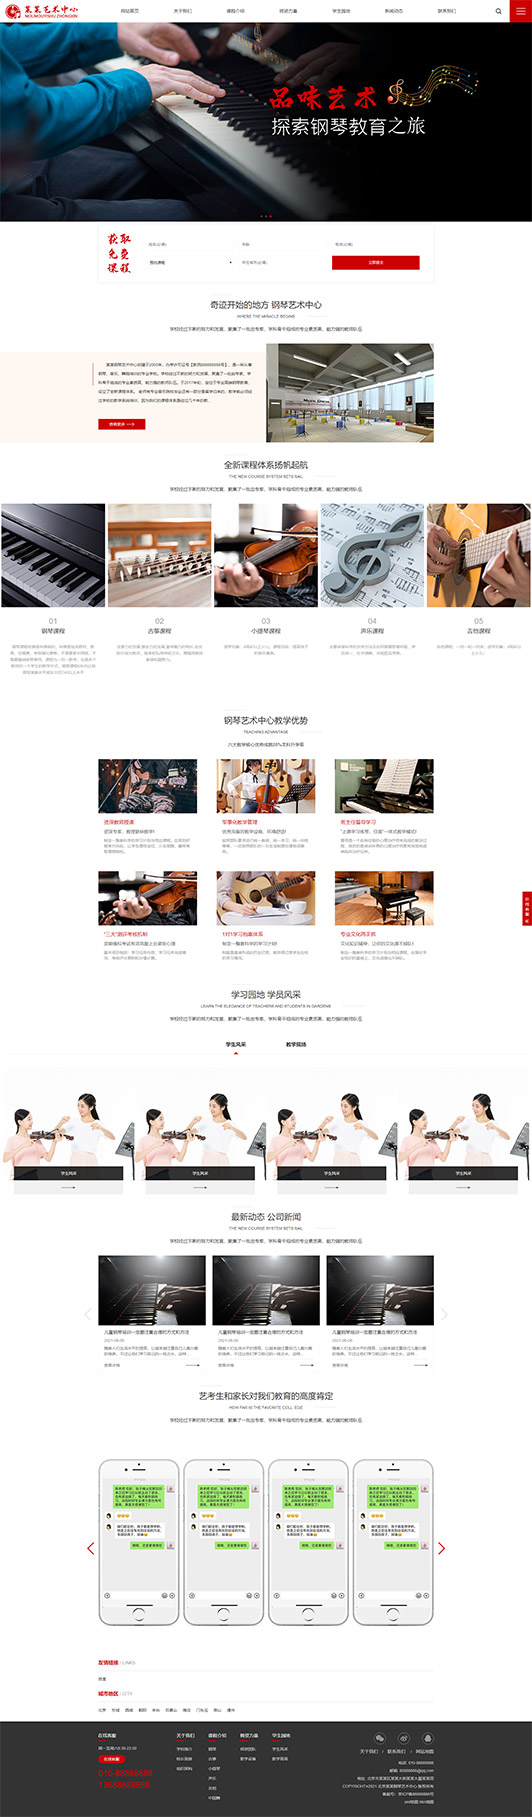 滁州钢琴艺术培训公司响应式企业网站